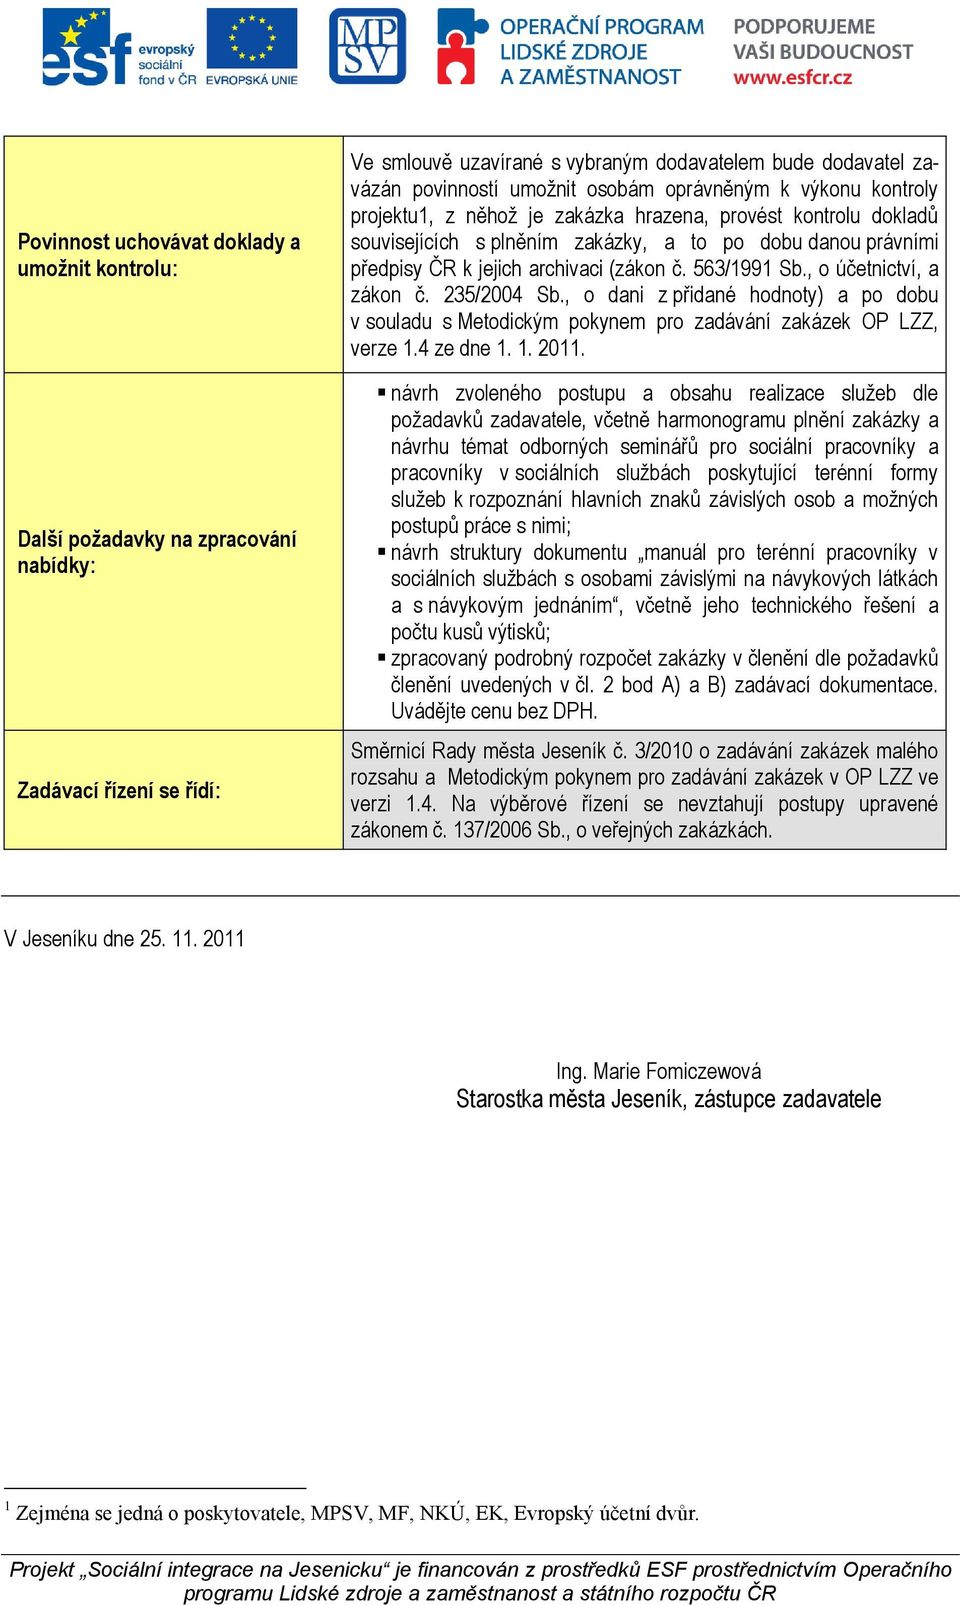 č. 563/1991 Sb., o účetnictví, a zákon č. 235/2004 Sb., o dani z přidané hodnoty) a po dobu v souladu s Metodickým pokynem pro zadávání zakázek OP LZZ, verze 1.4 ze dne 1. 1. 2011.